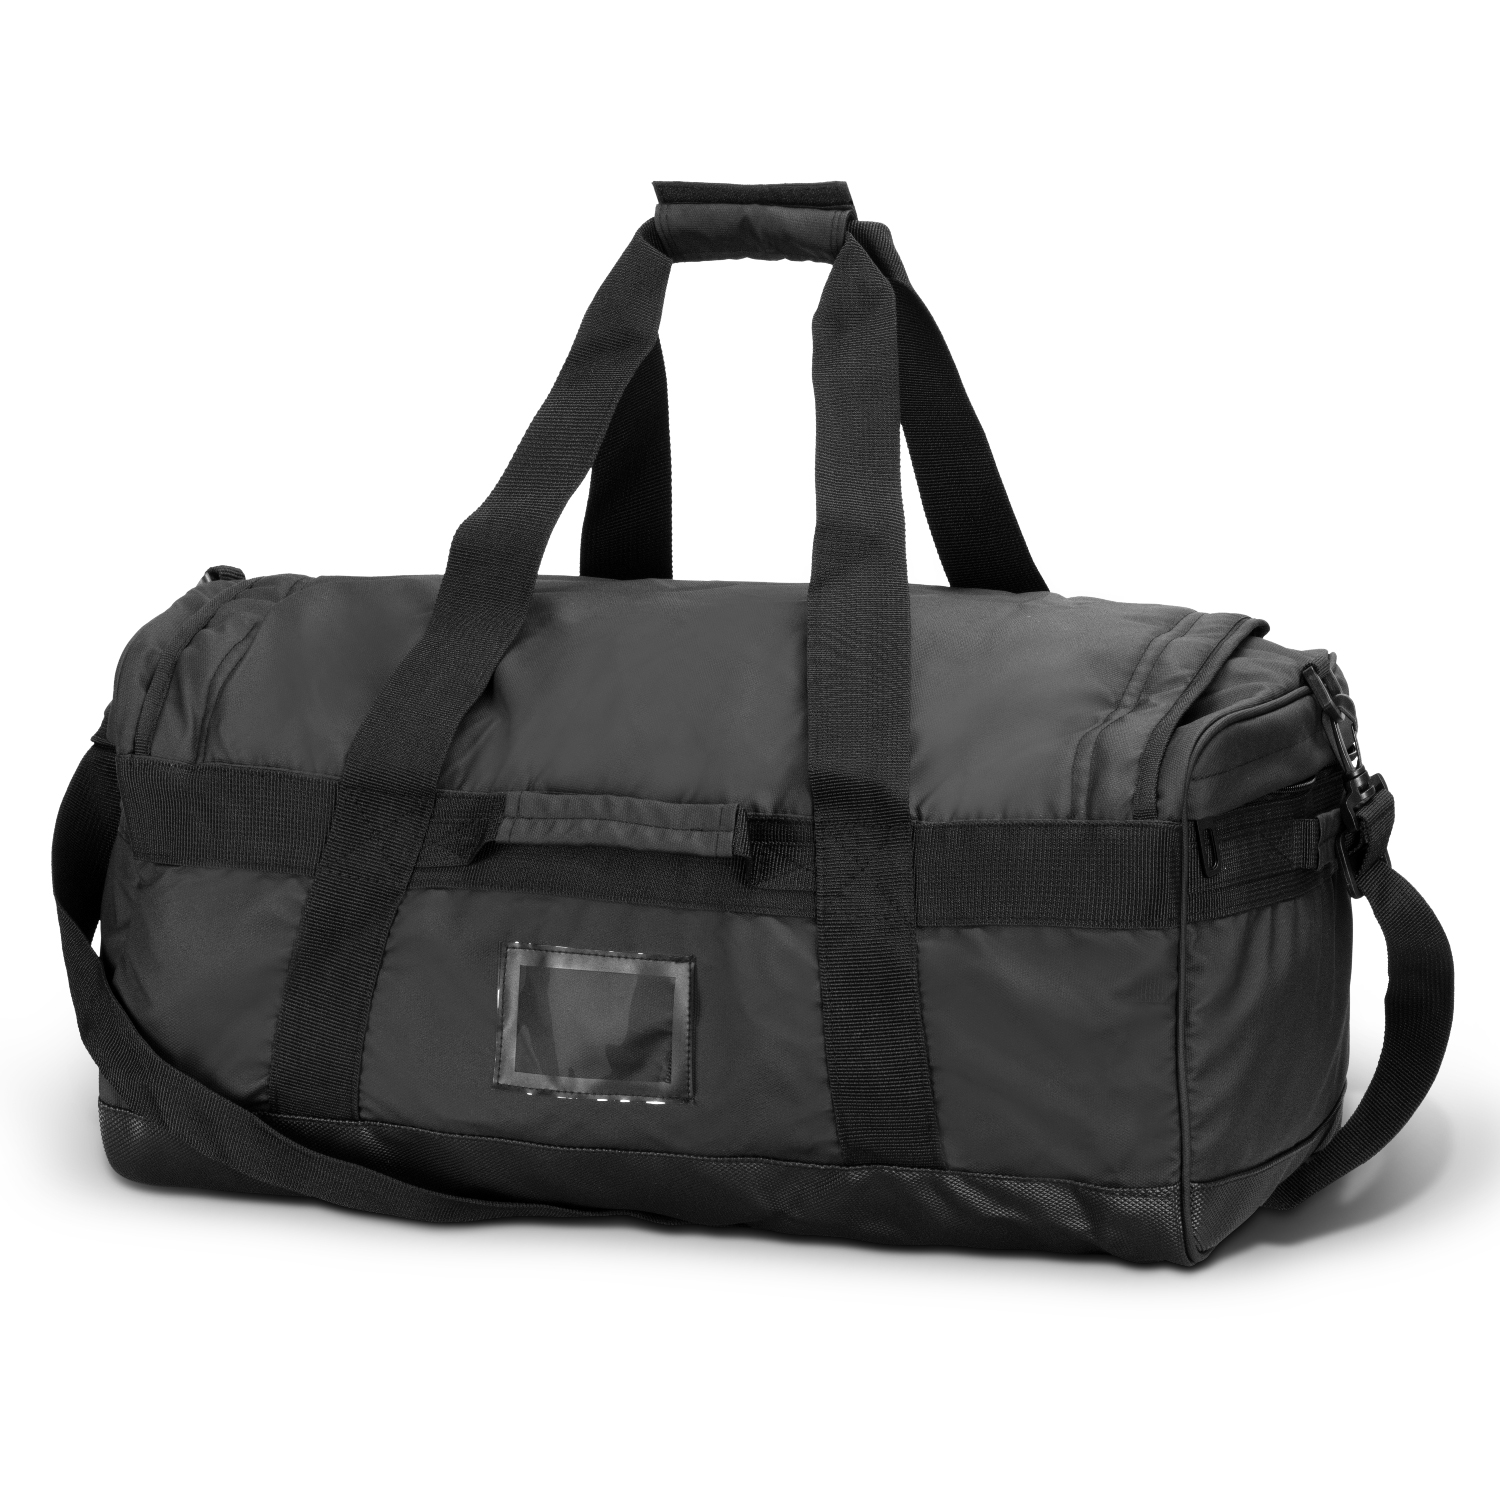 TRENDS | Aquinas 50L Duffle Bag